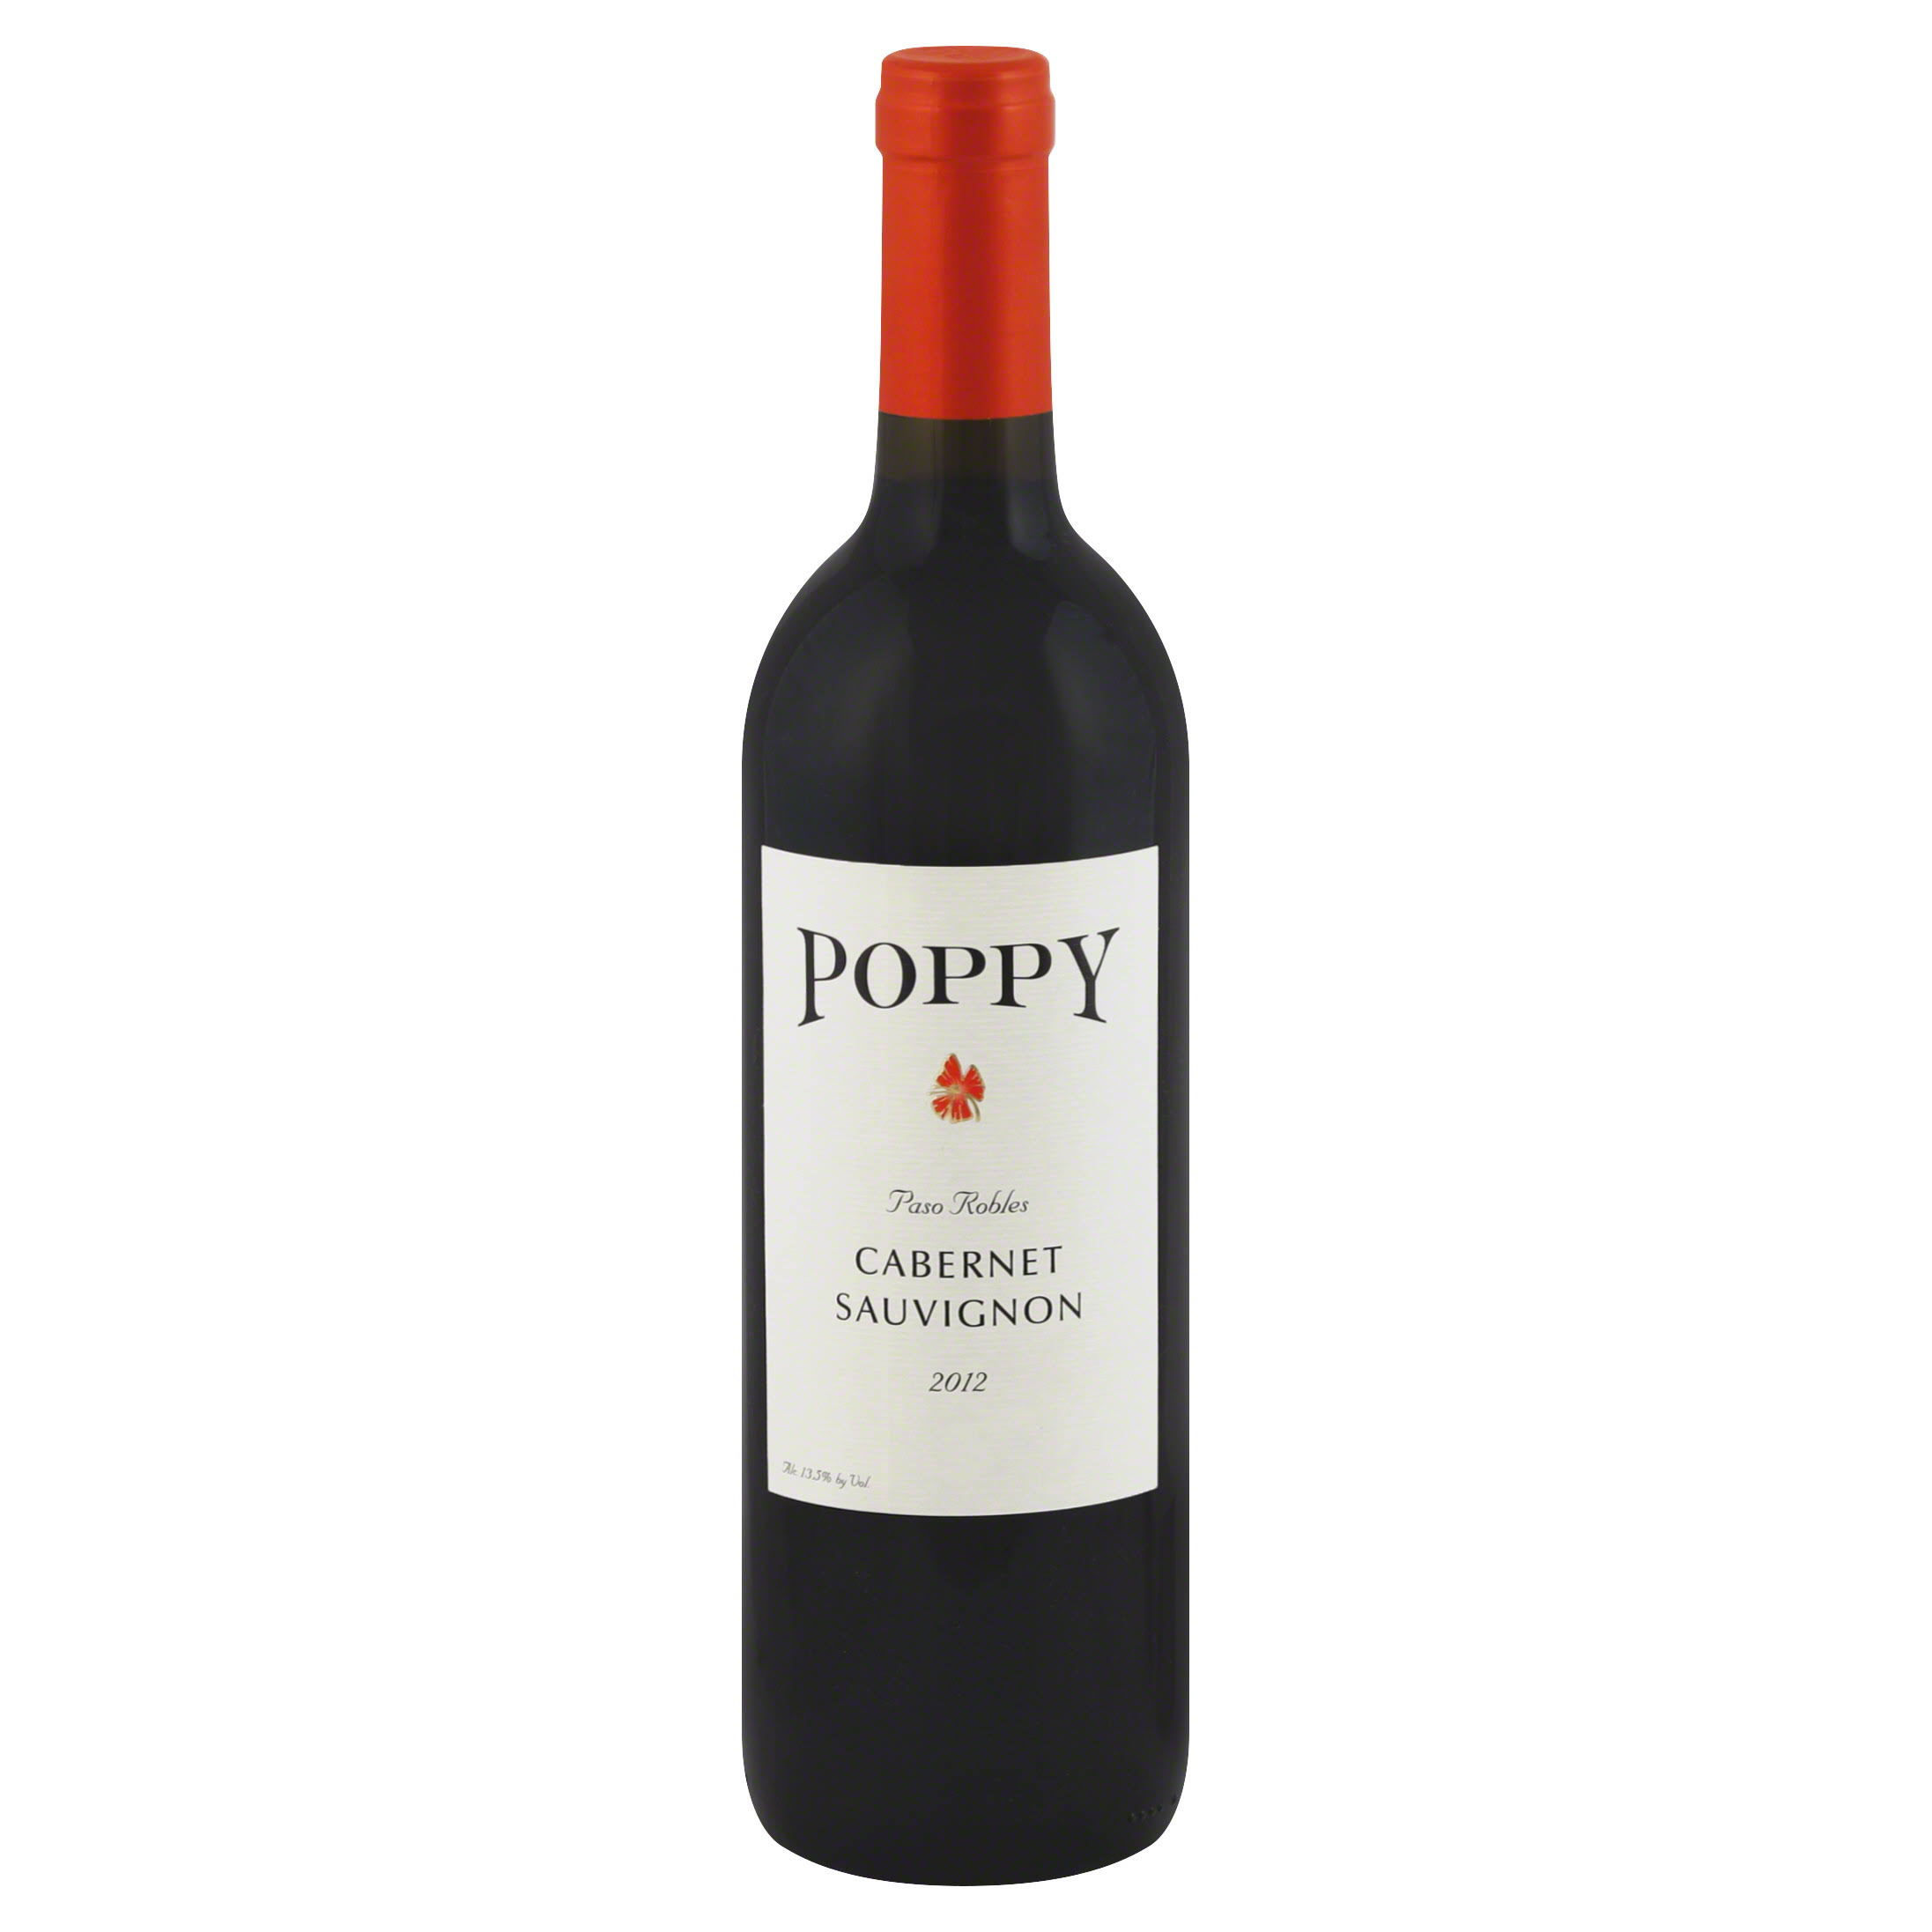 Poppy Cabernet Sauvignon Paso Robles 2012 Red Wine - California, USA